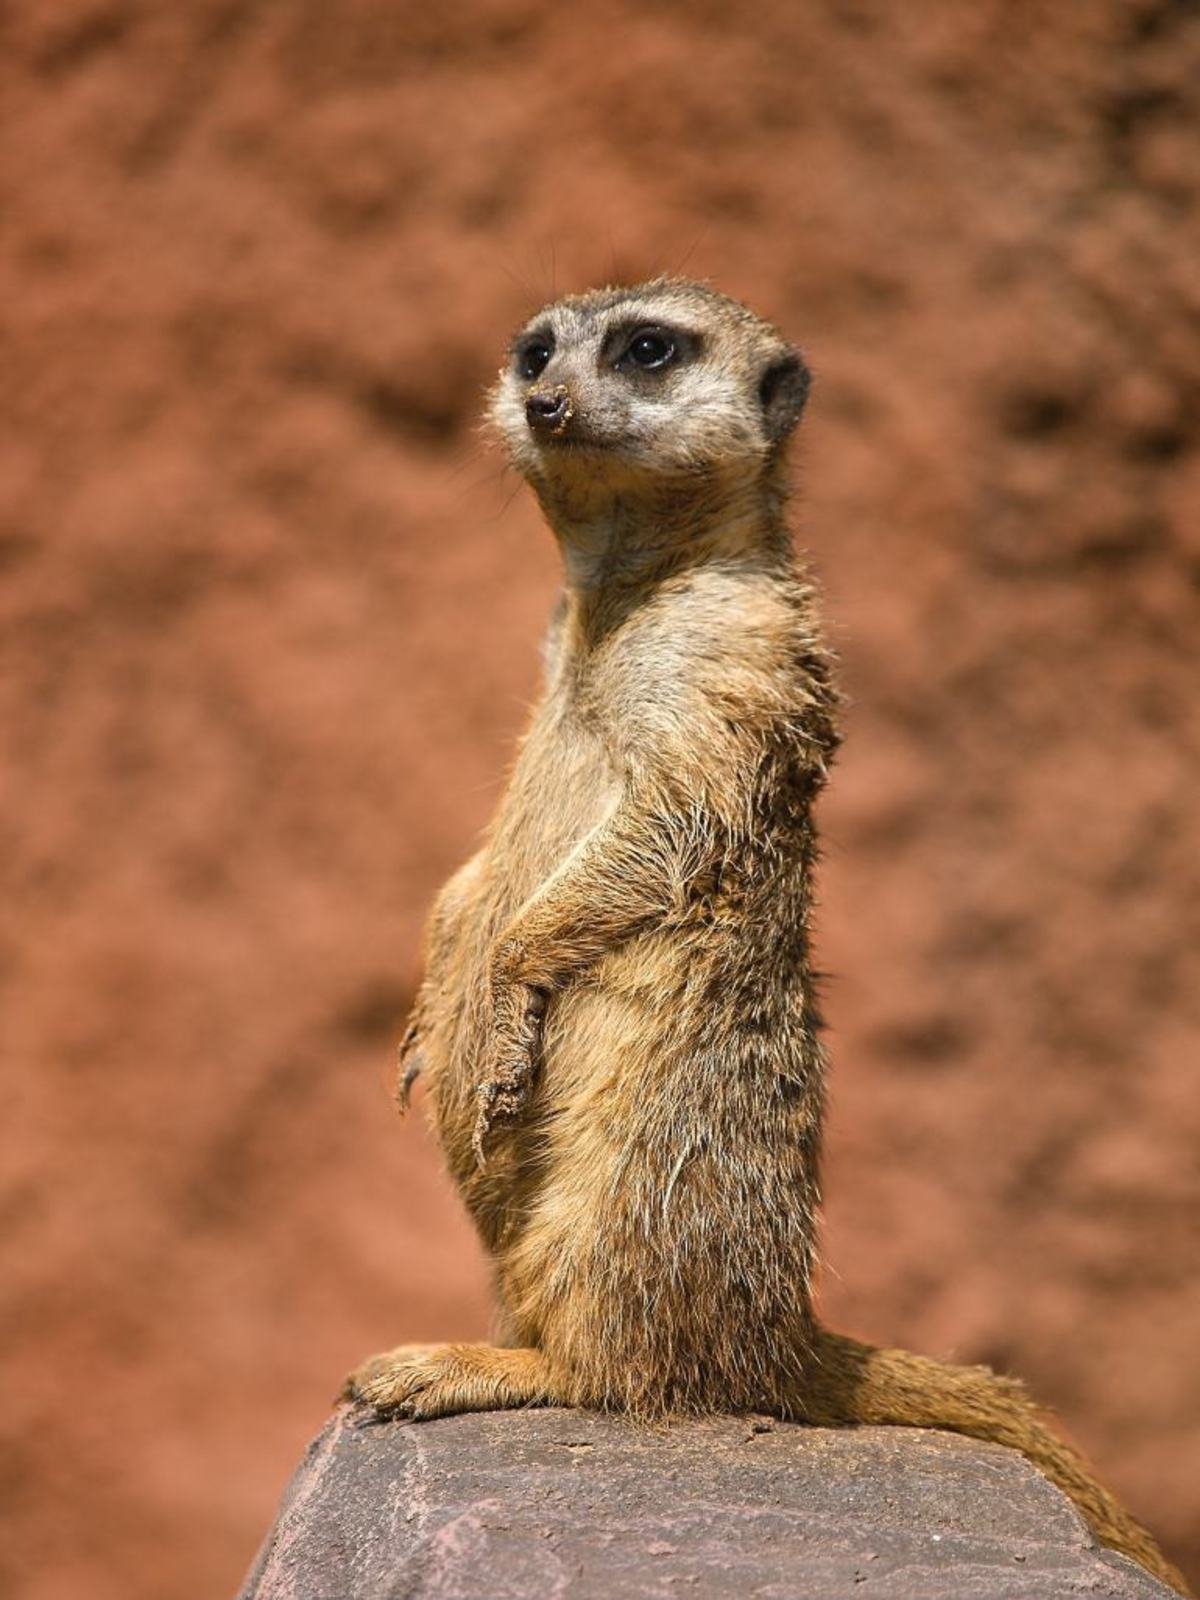 Expremiérův vzpřímený postoj i profil připomínají afrického hlodavečka surikatu, která žije v koloniích a své souputníky ukrývající se v norách systematicky hlídá.